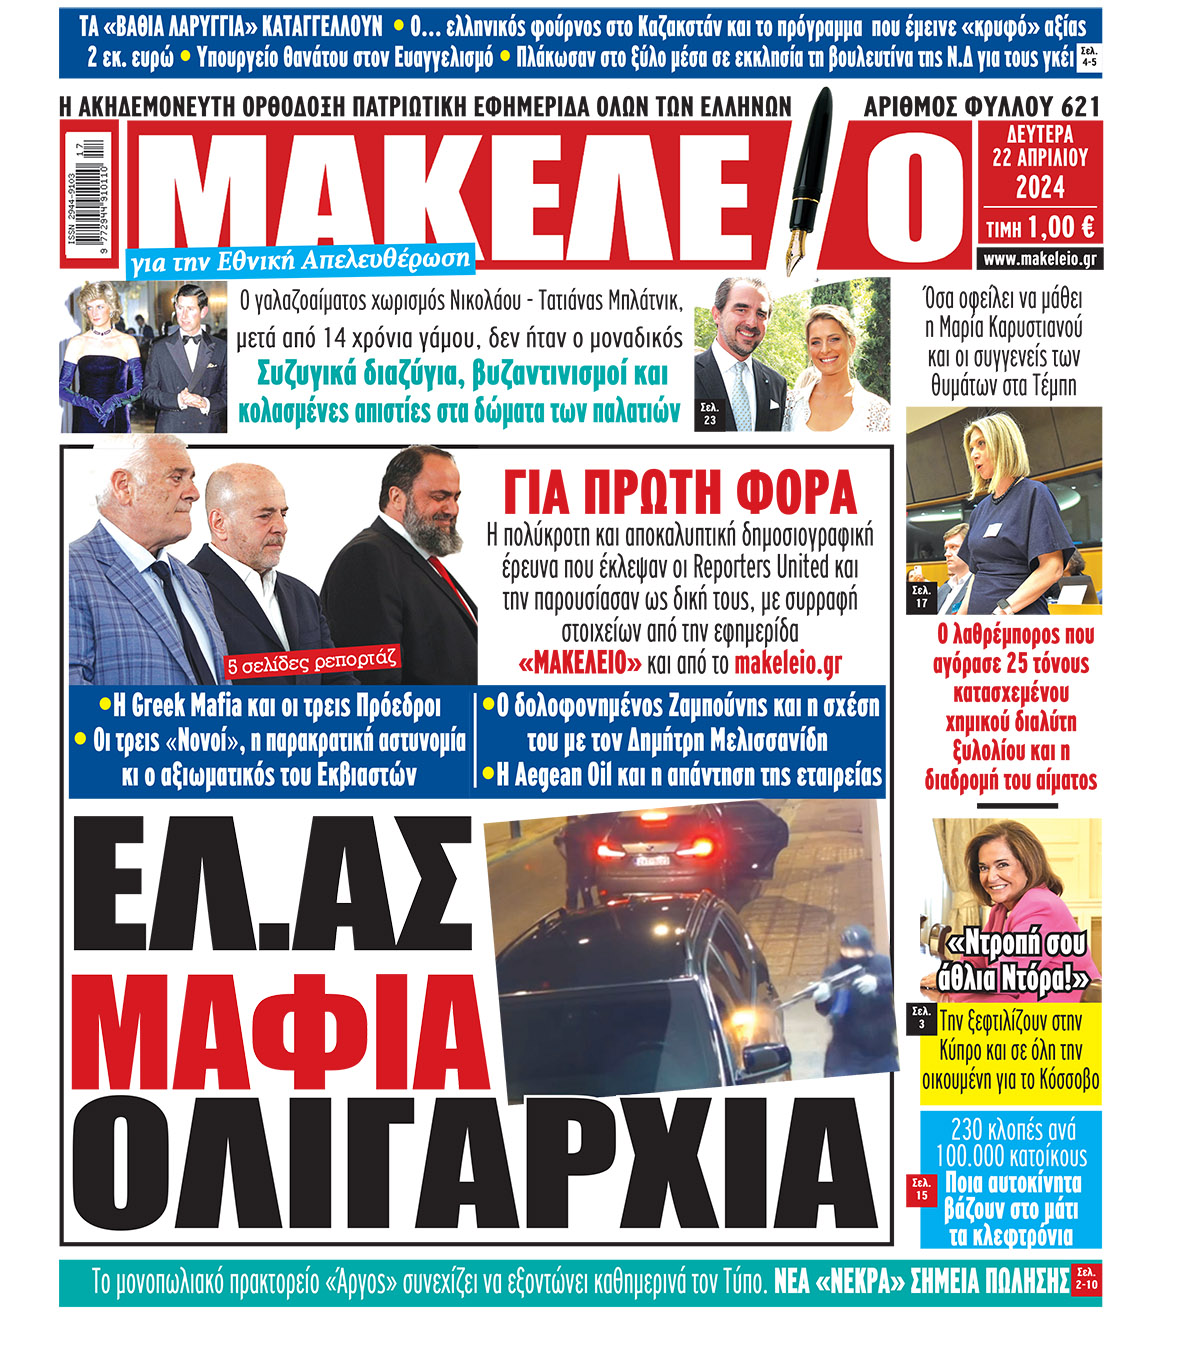 Το χθεσινό πρωτοσέλιδο της εφημερίδας που αναδεικνύει ξανά το θέμα της greek mafia